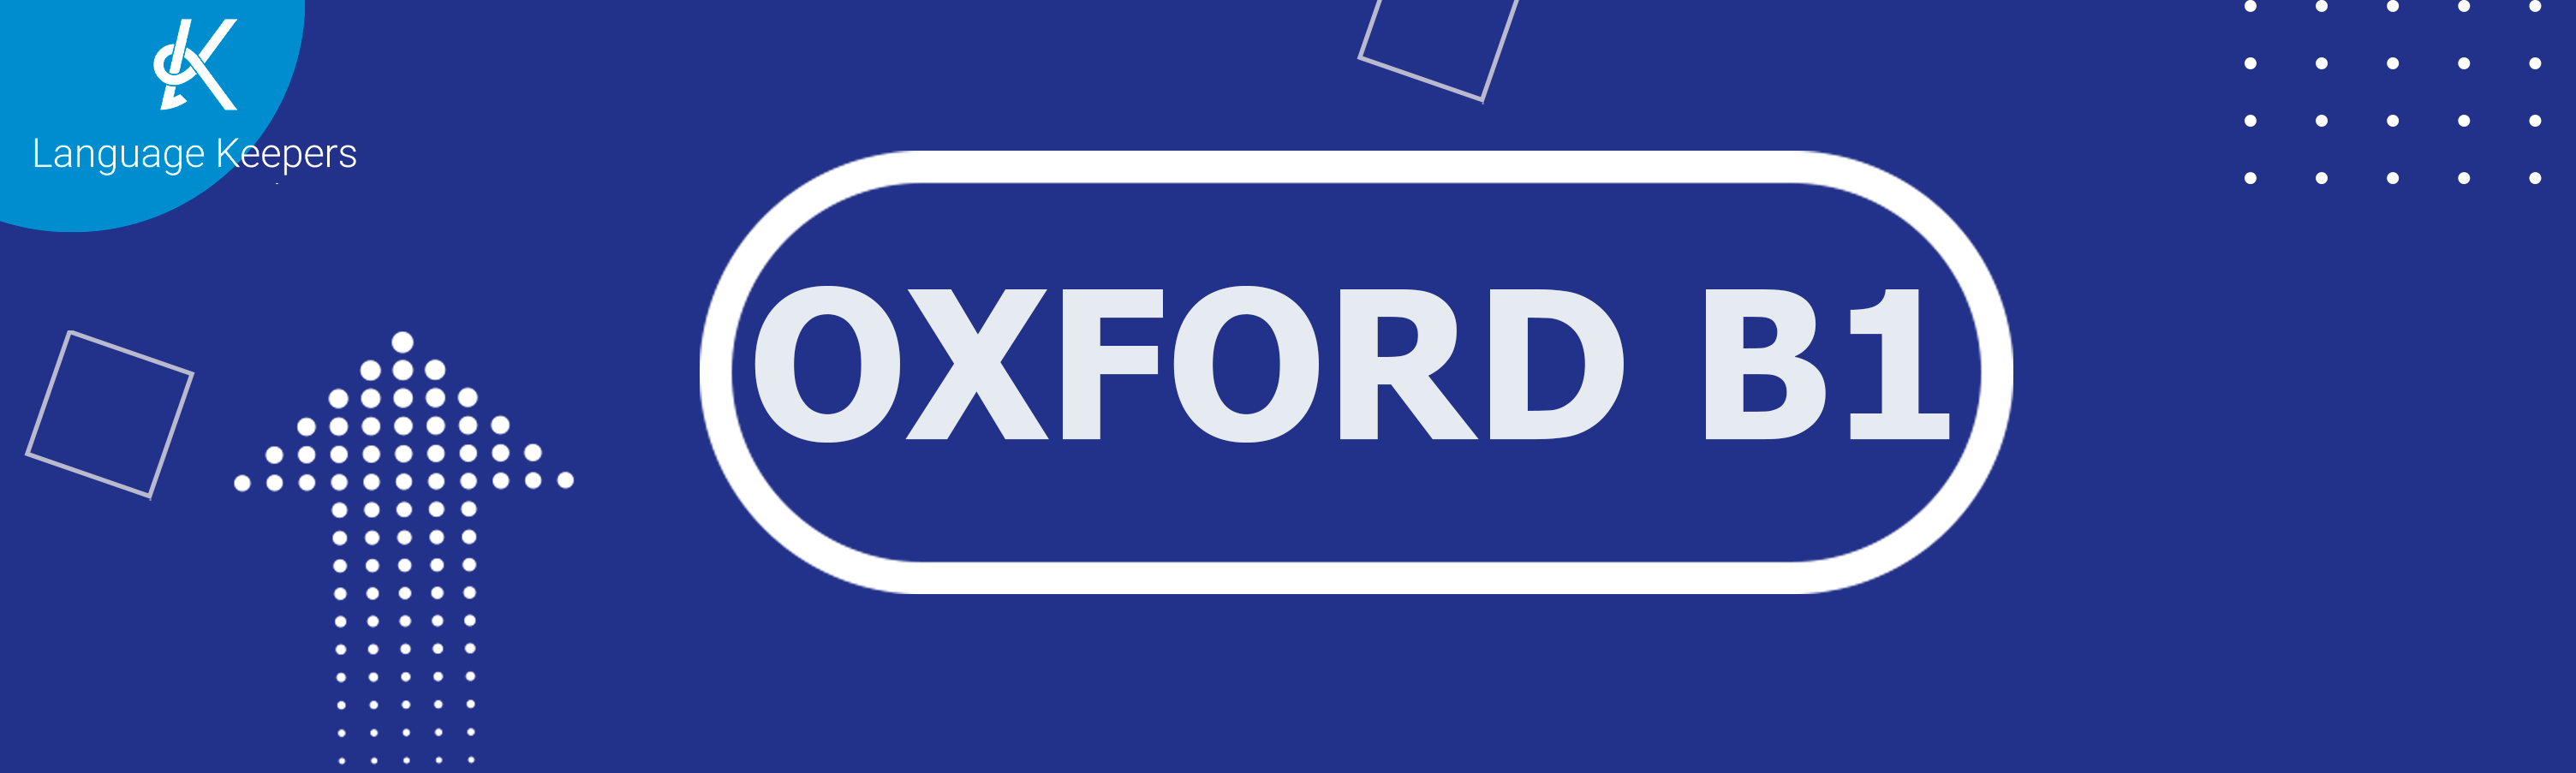 OXFORD B1